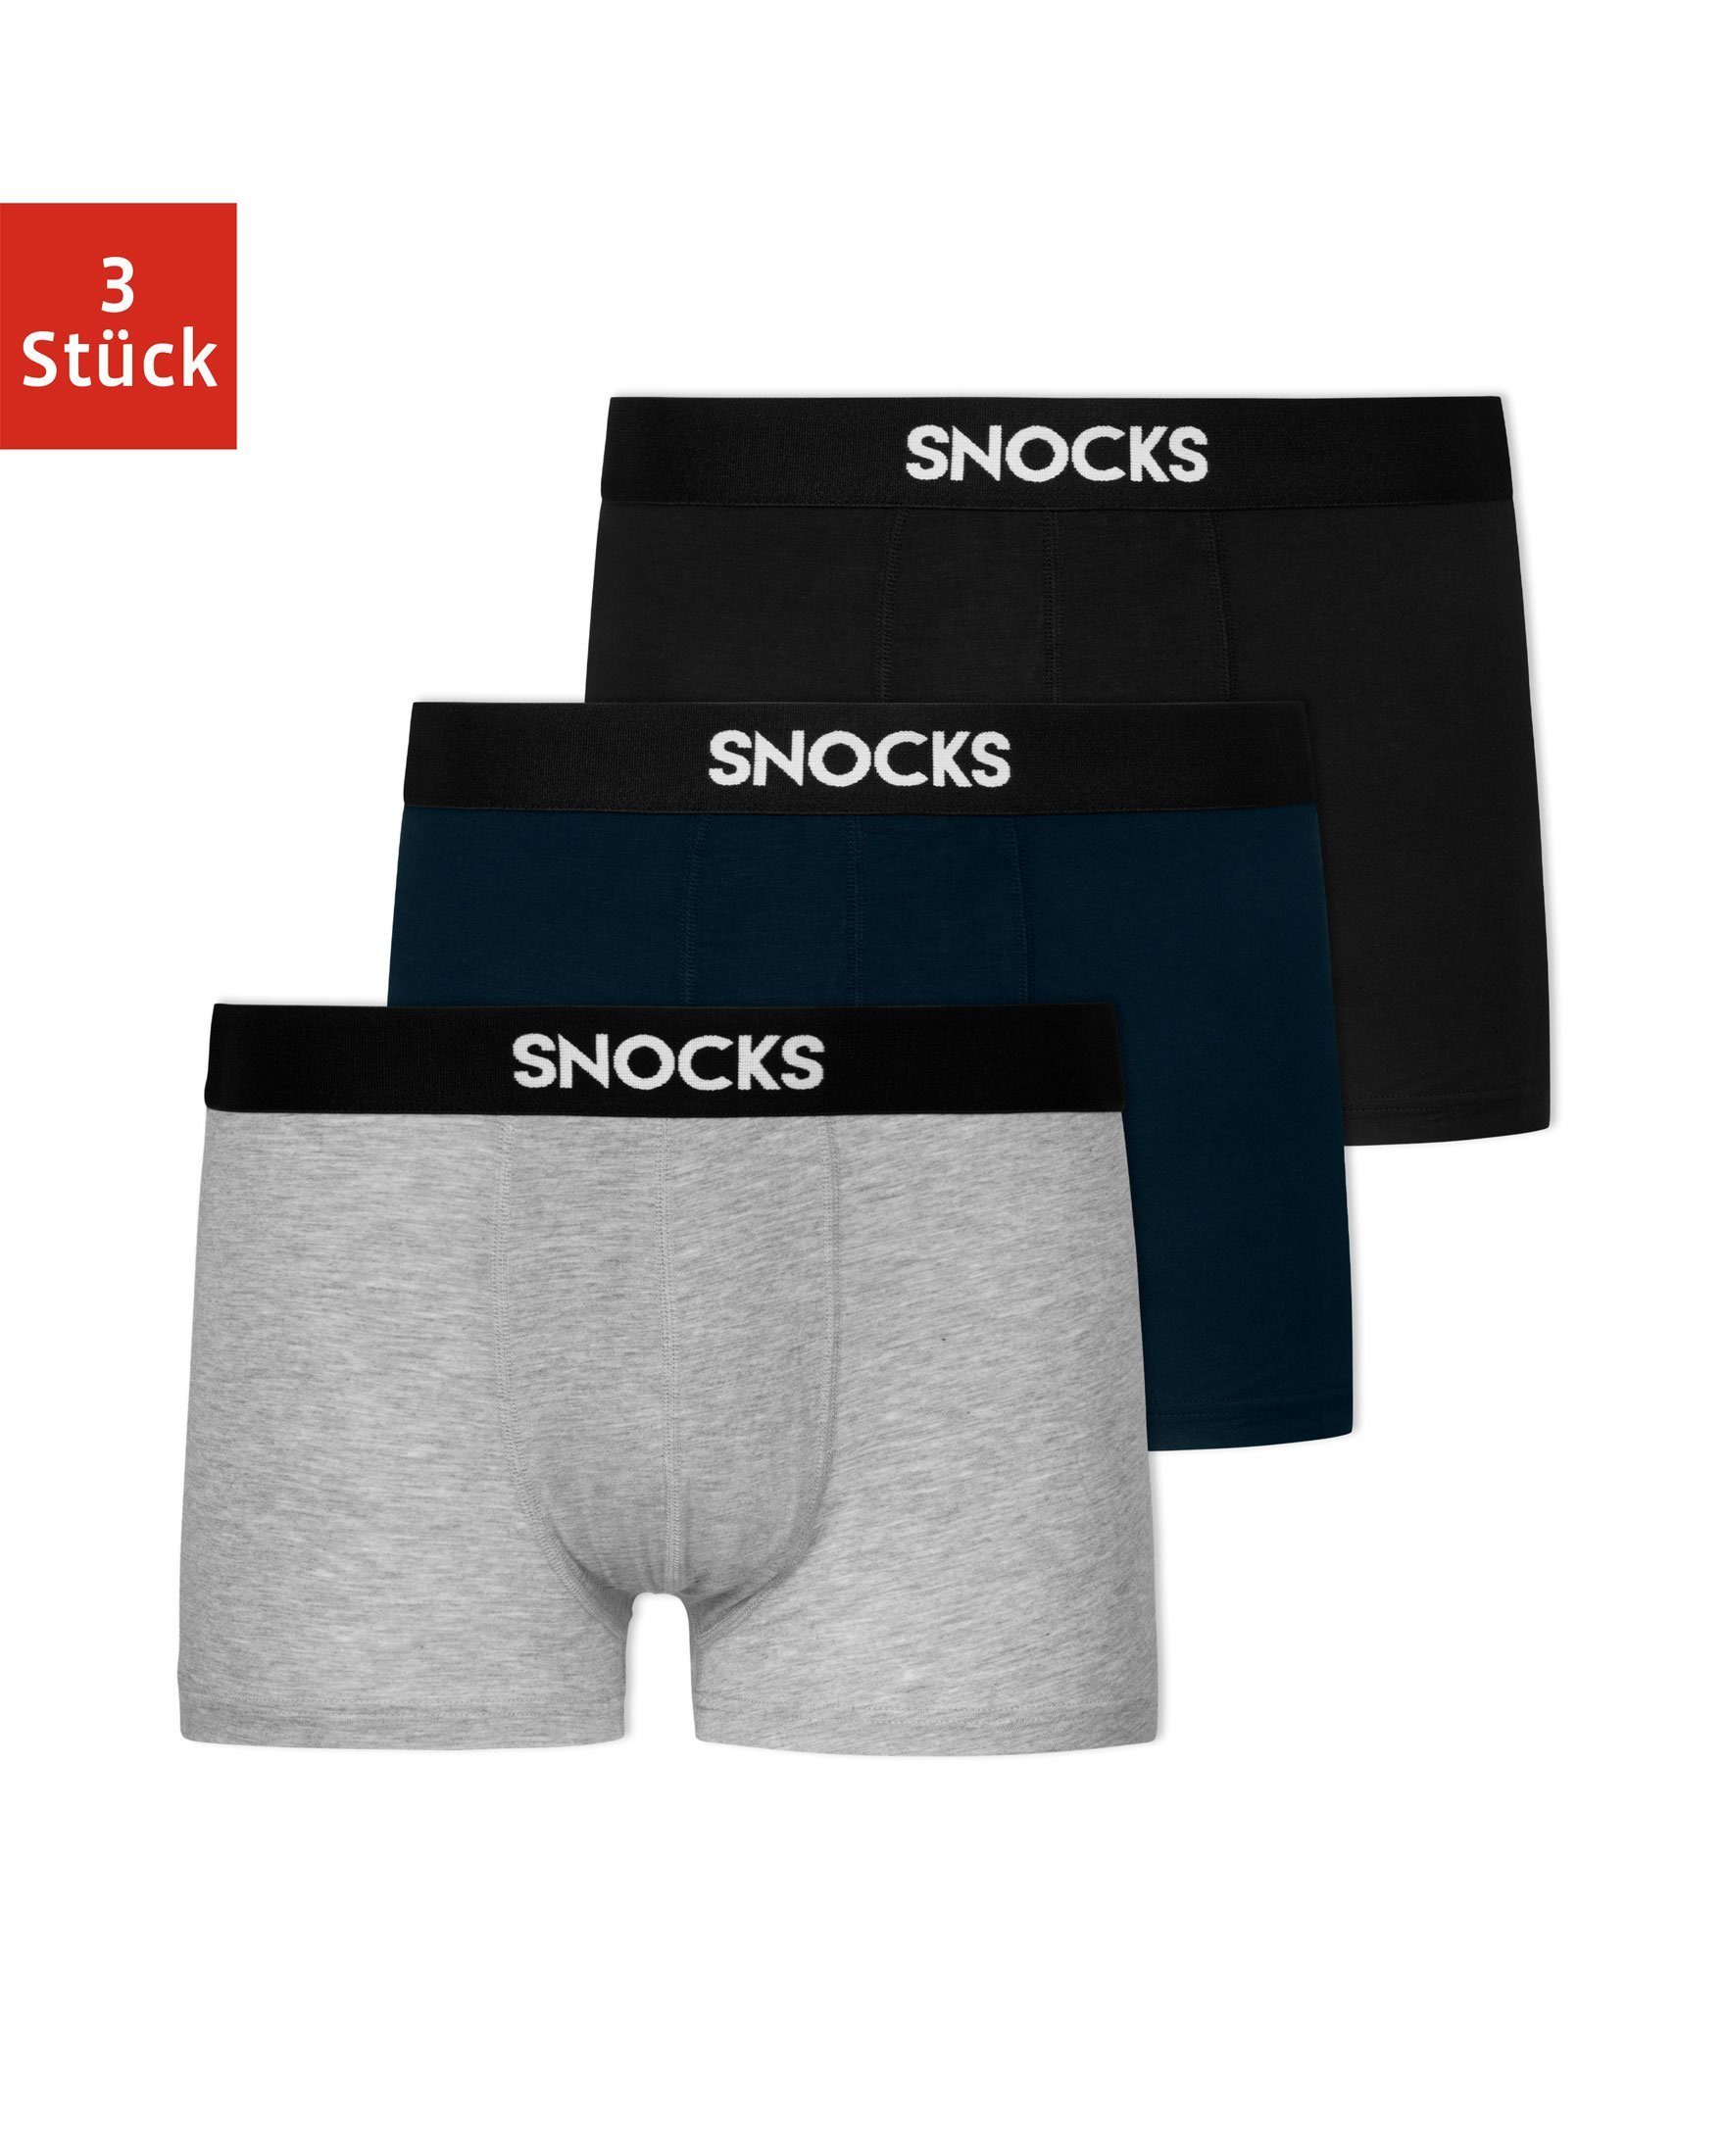 Wäsche/Bademode Boxershorts SNOCKS Boxershorts Modal Enge Unterhosen Herren Männer (3 Stück) aus 95% Lenzing Modal, besonders we